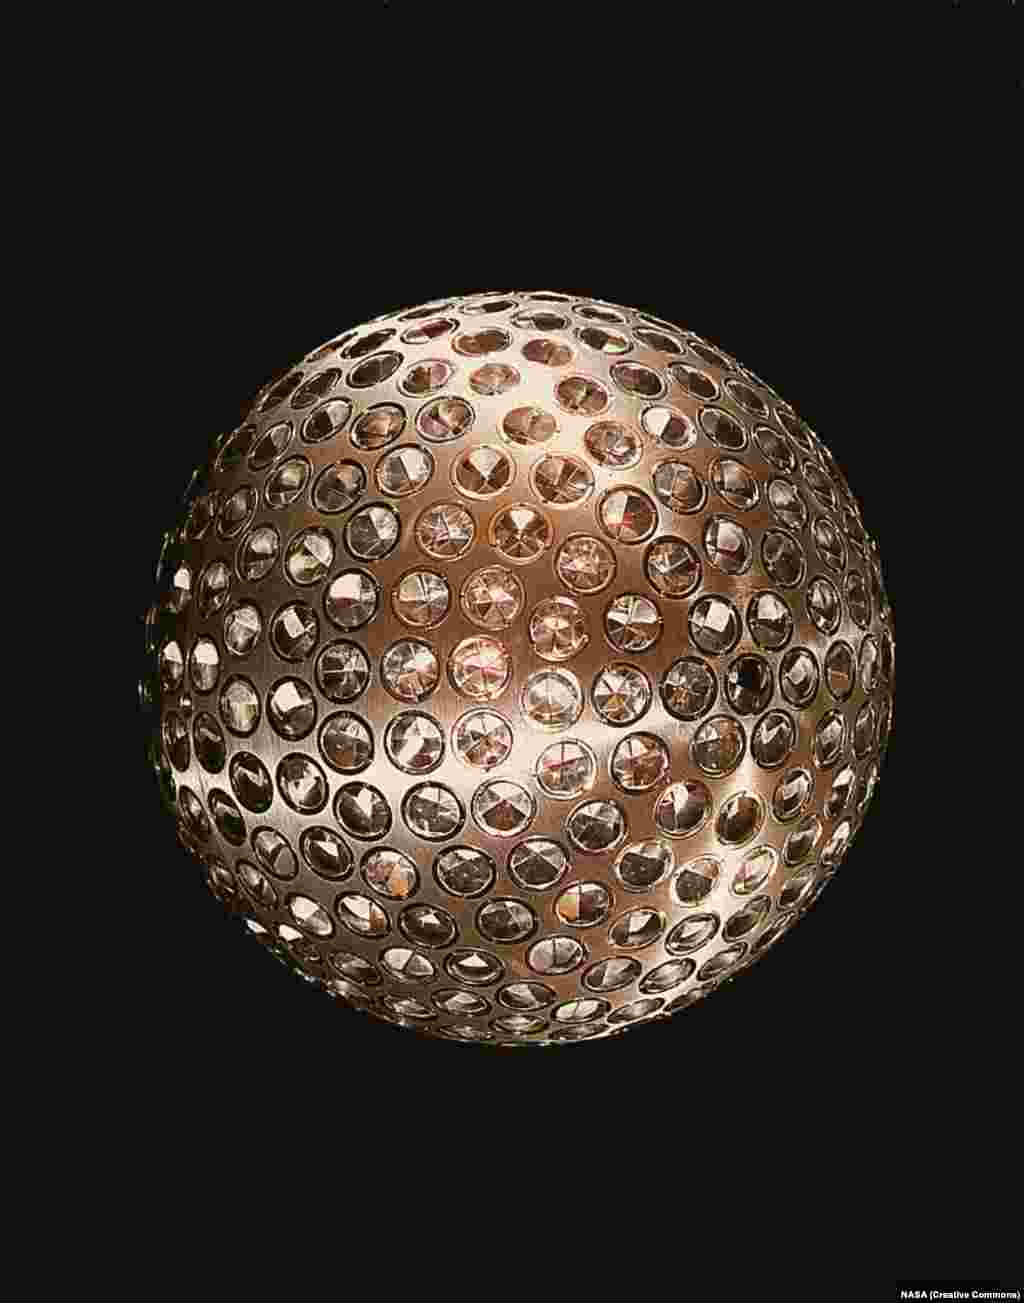 LAGEOS 1 спутнигін NASA 1976 жылы ғарышқа ұшырған. Салмағы 400 келі тартатын спутникке орнатылған рефлекторлар Жерден лазер сәулесінің көмегімен тектоникалық қабаттардың жылжуын және планетаның формасын дәл анықтауға мүмкіндік берді.